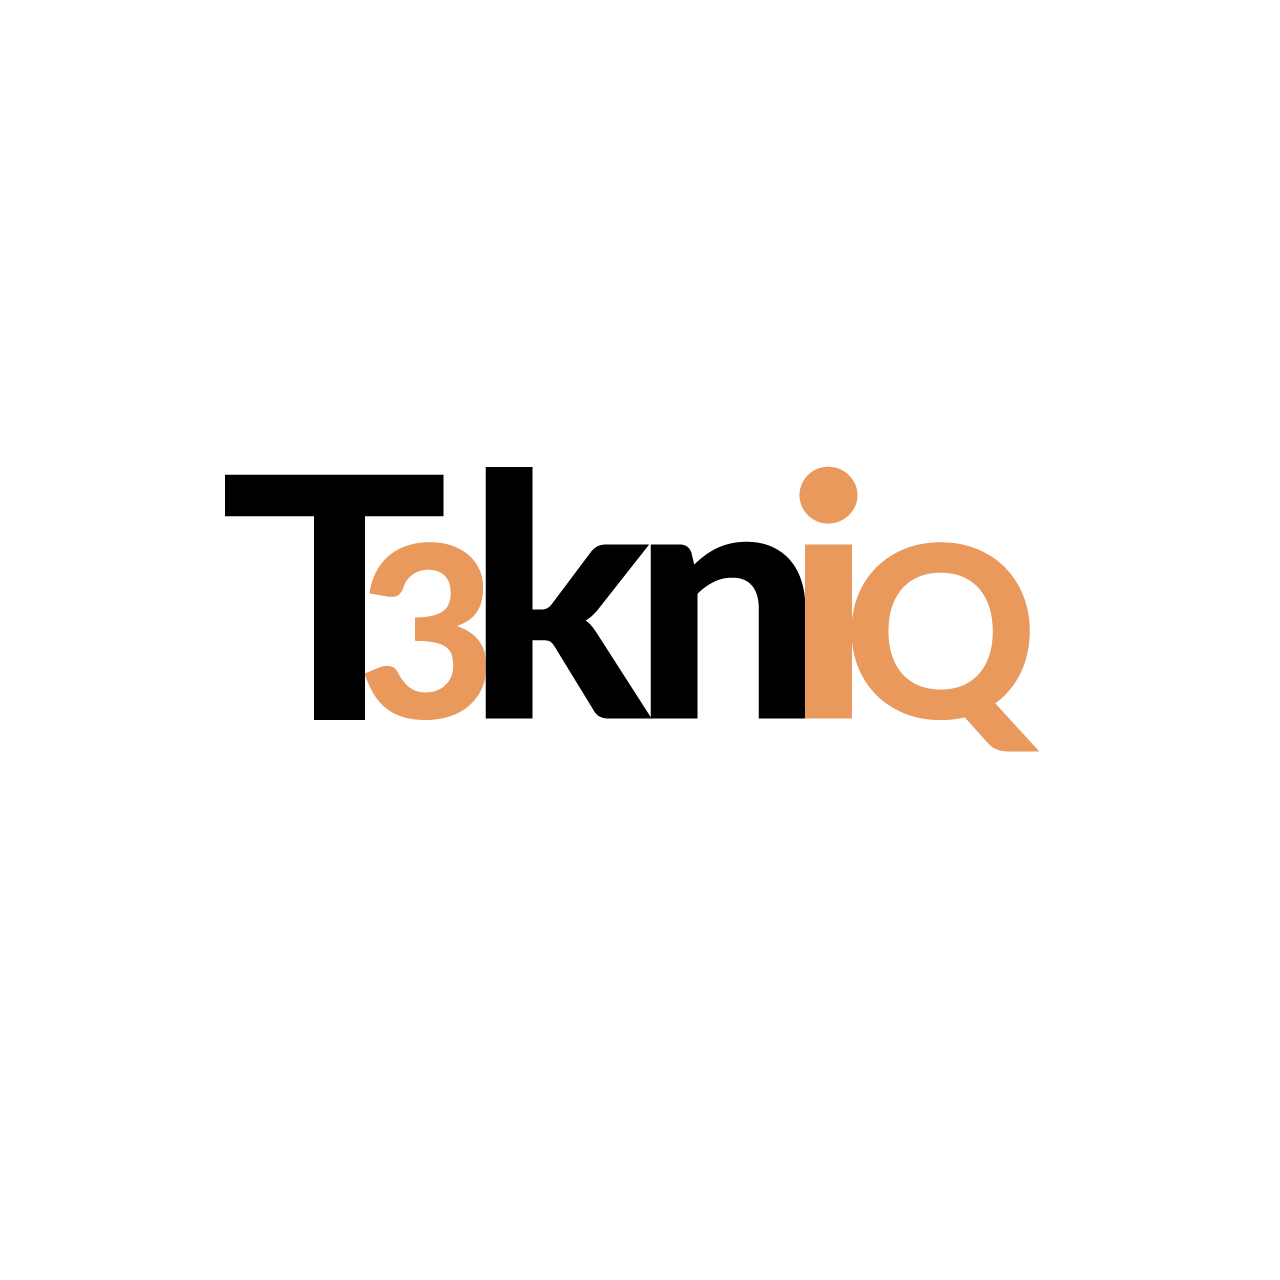 T3kniQ's Logo